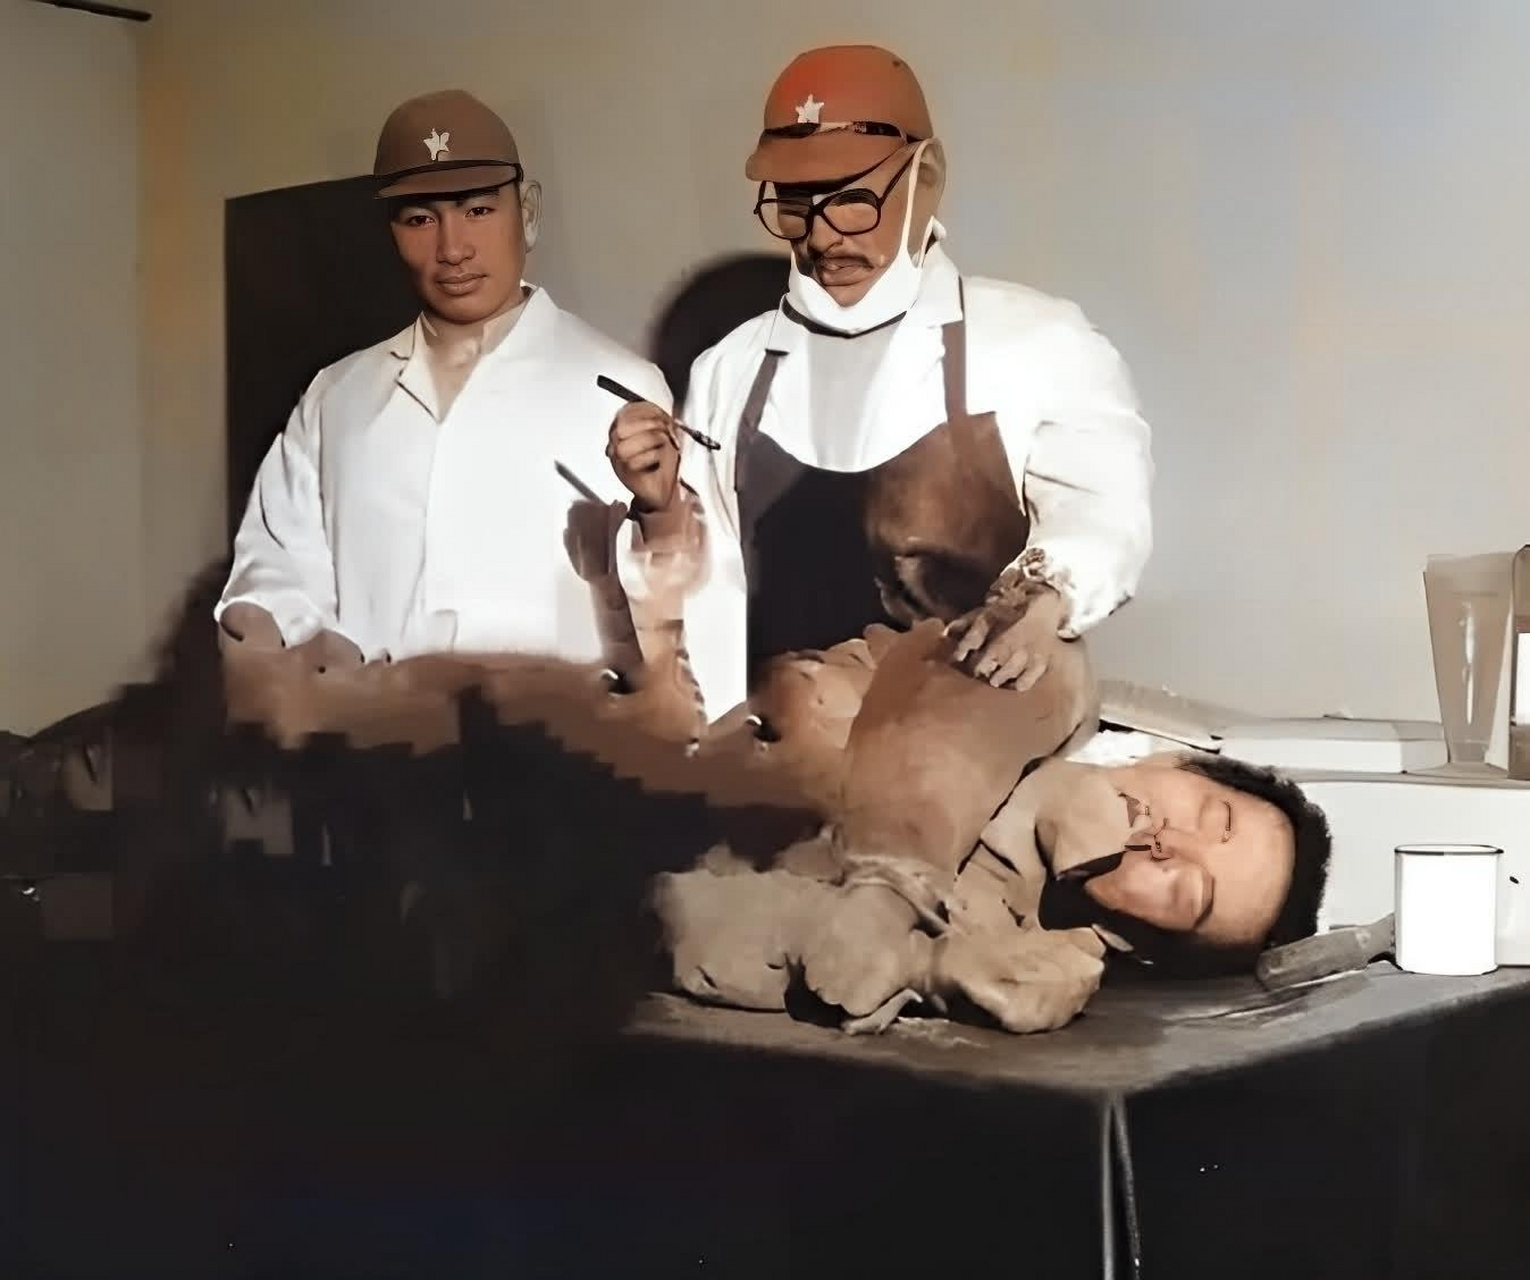 1941年,两个日本731部队恶魔在一个人身上做人体实验!